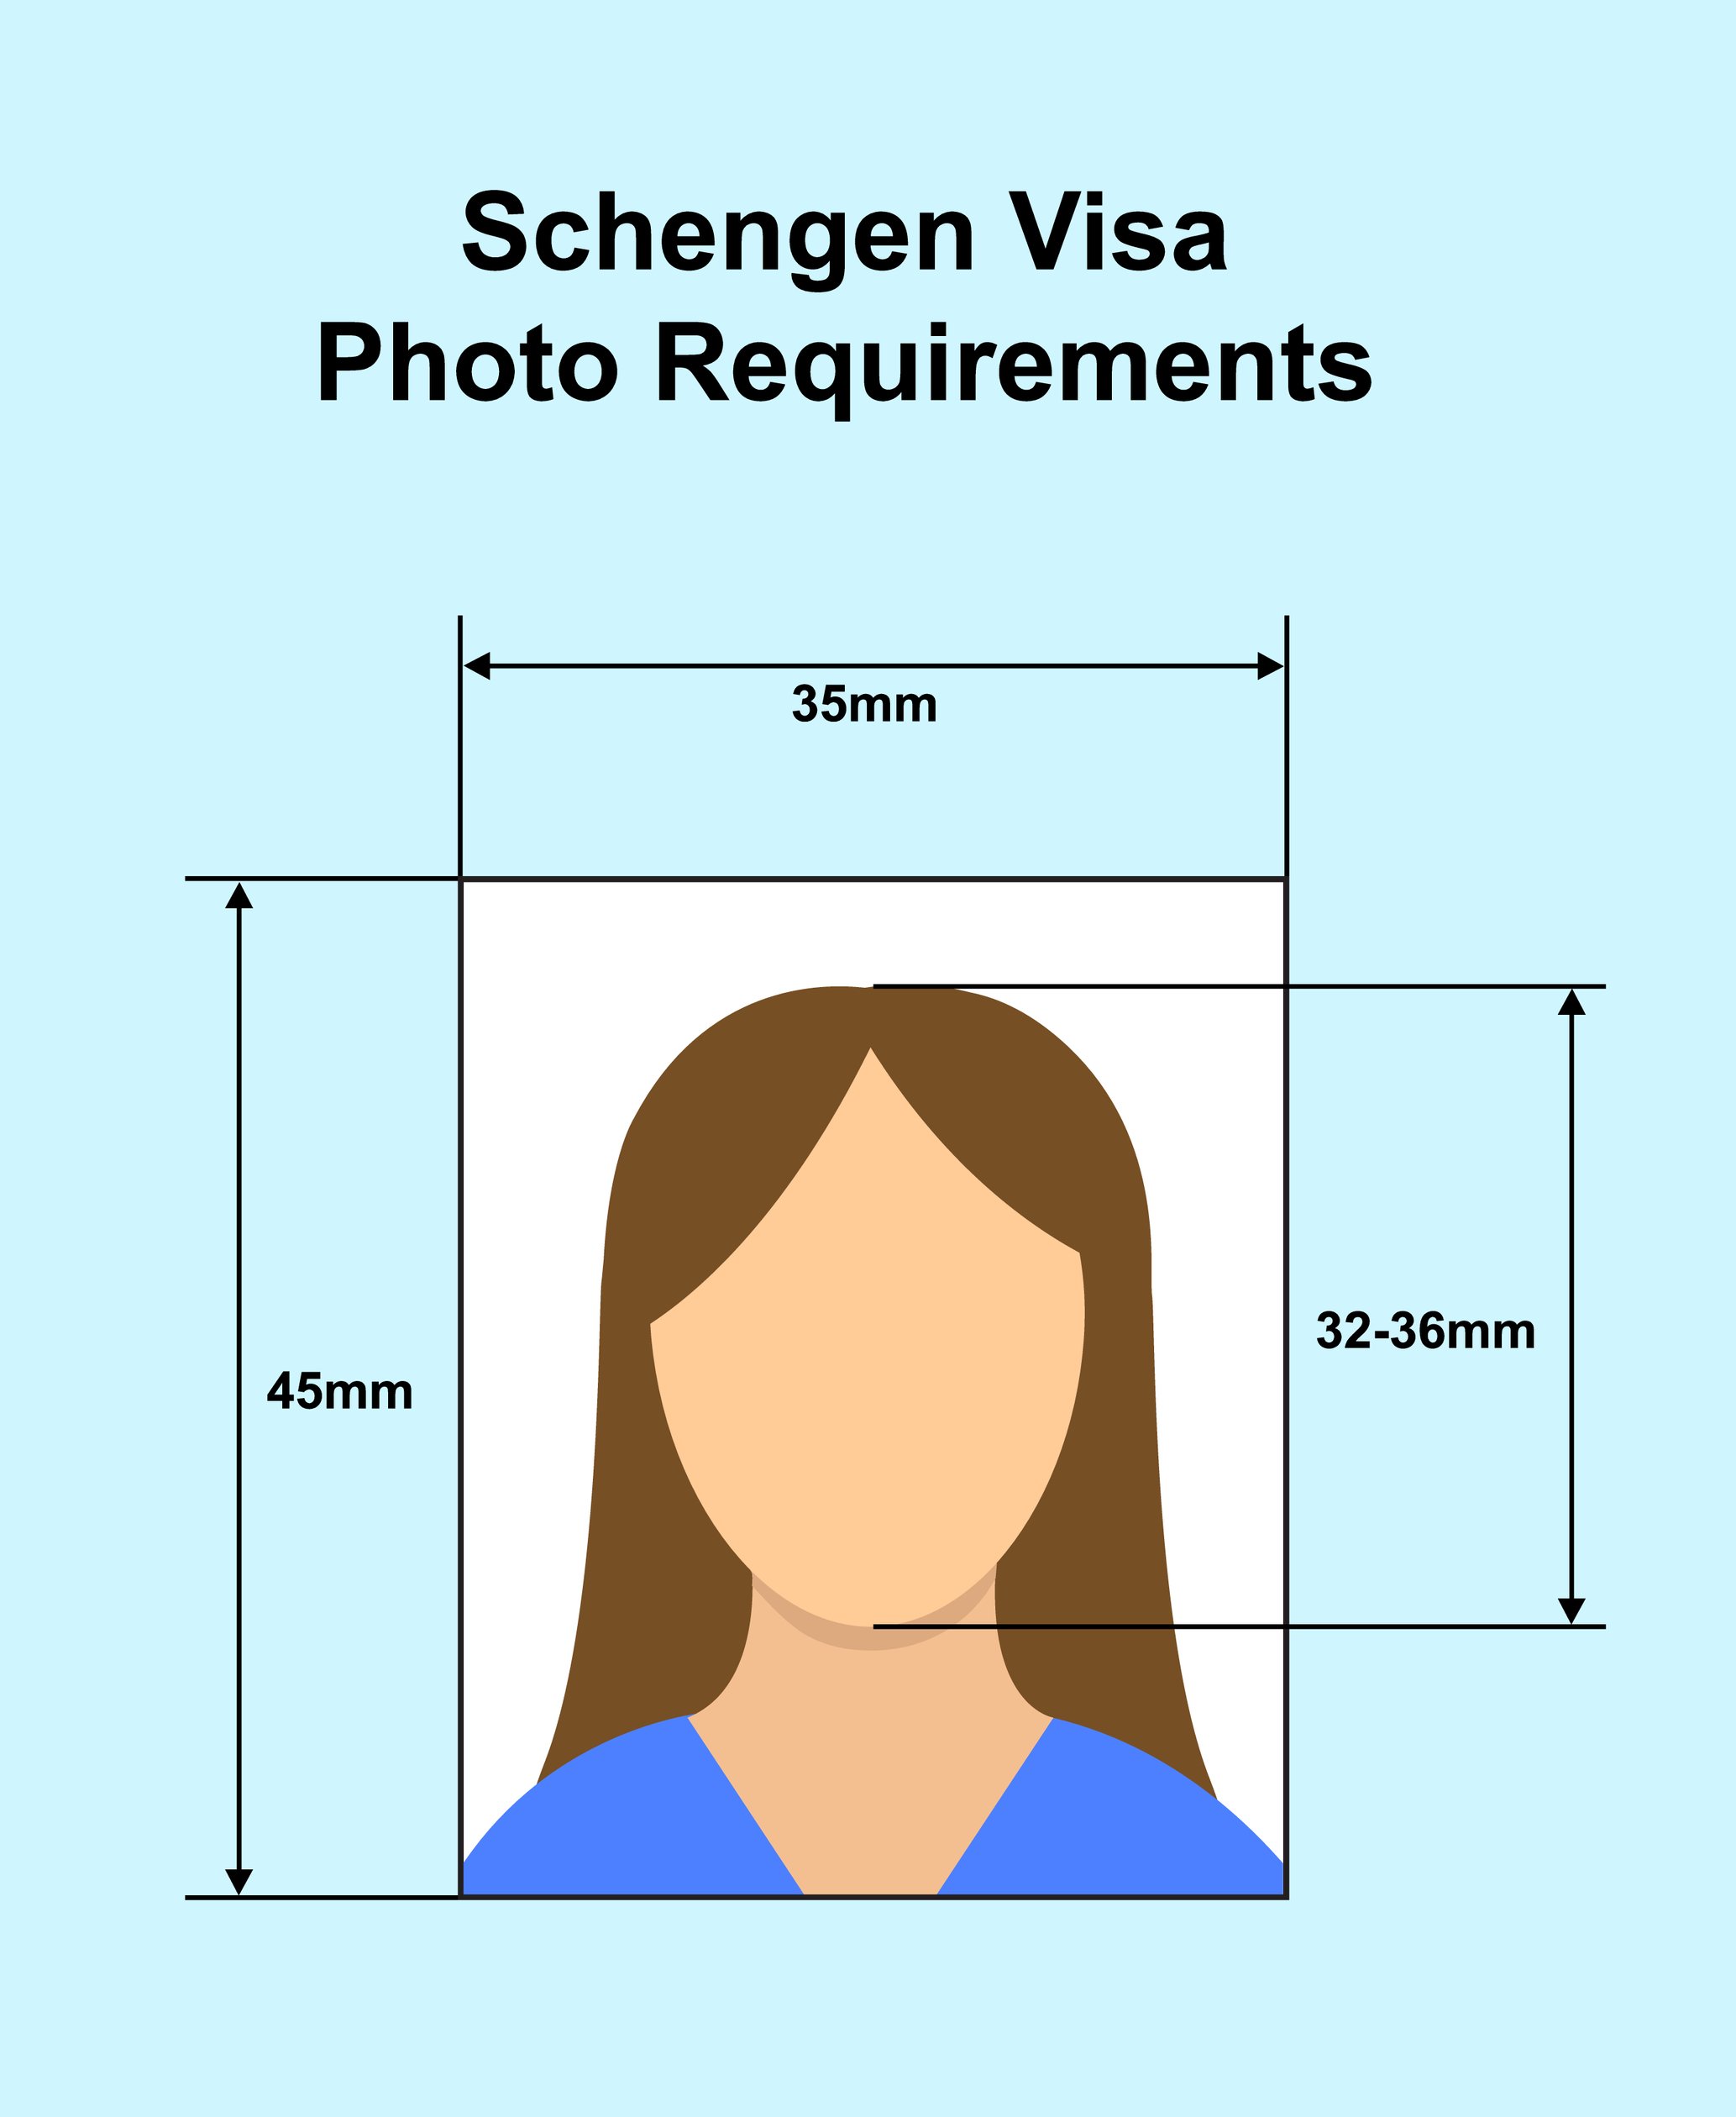 Schengen visa photo requirements